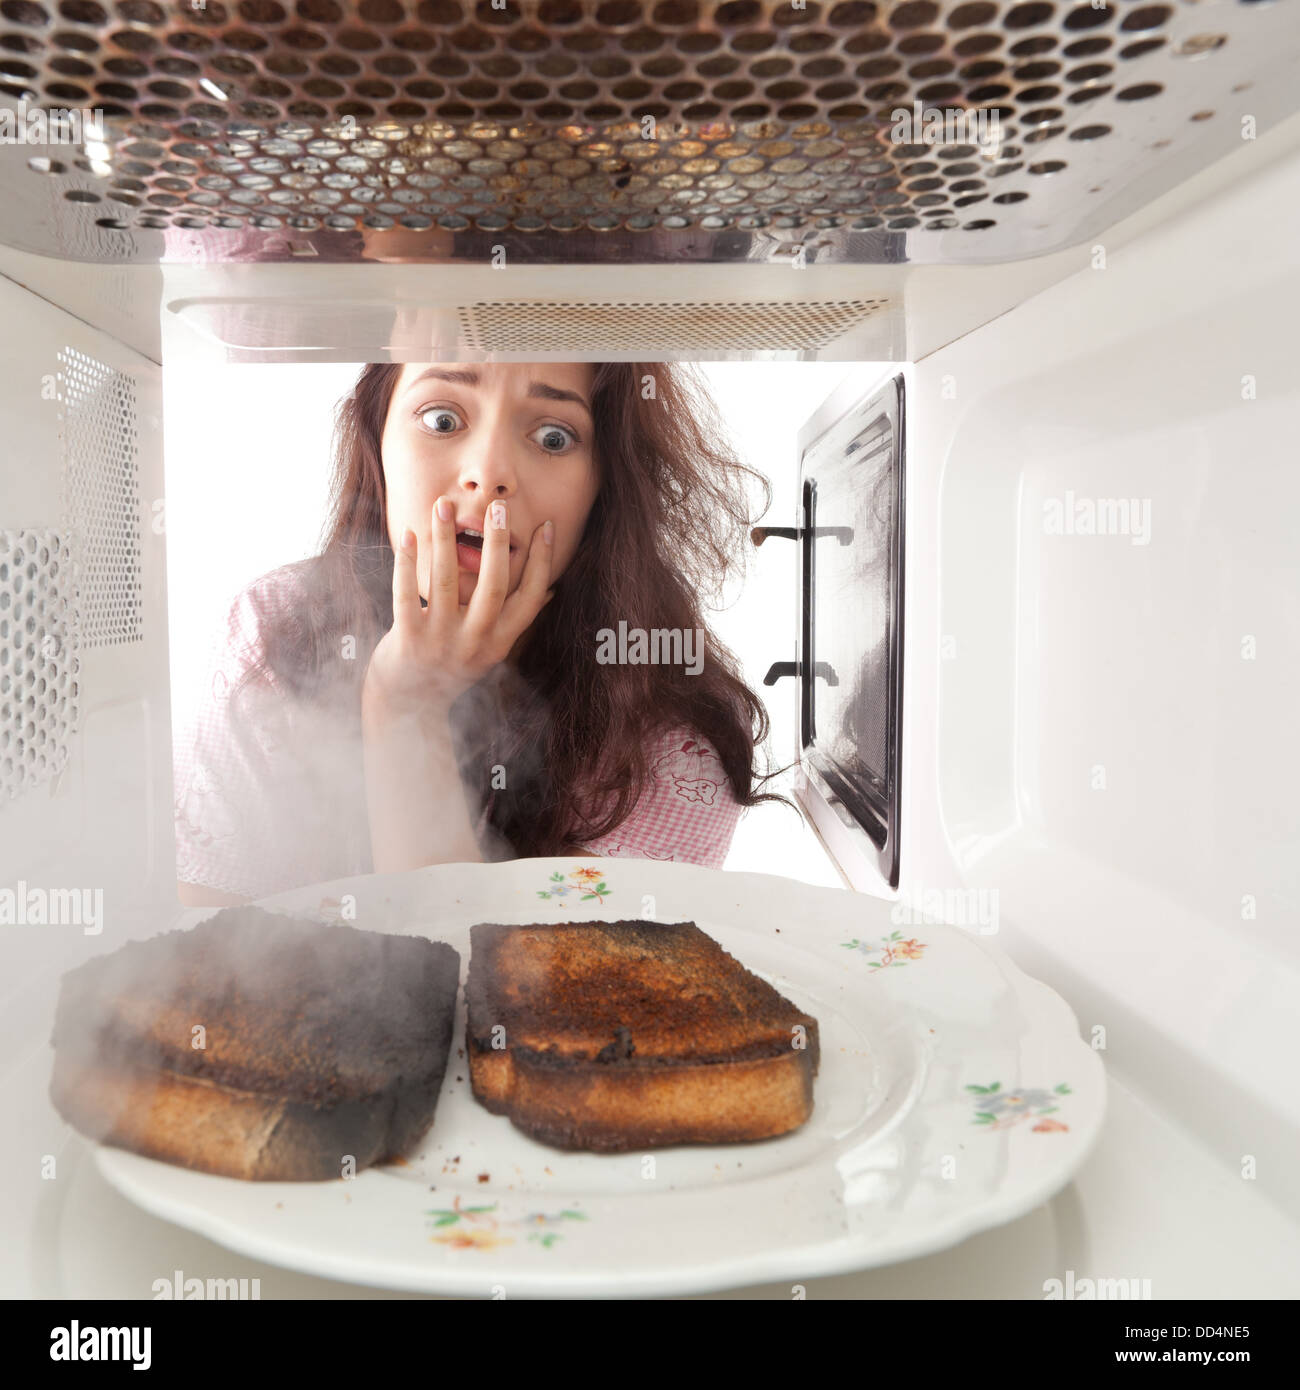 Junges Mädchen verbrannten Toast in der Mikrowelle Stockfotografie - Alamy